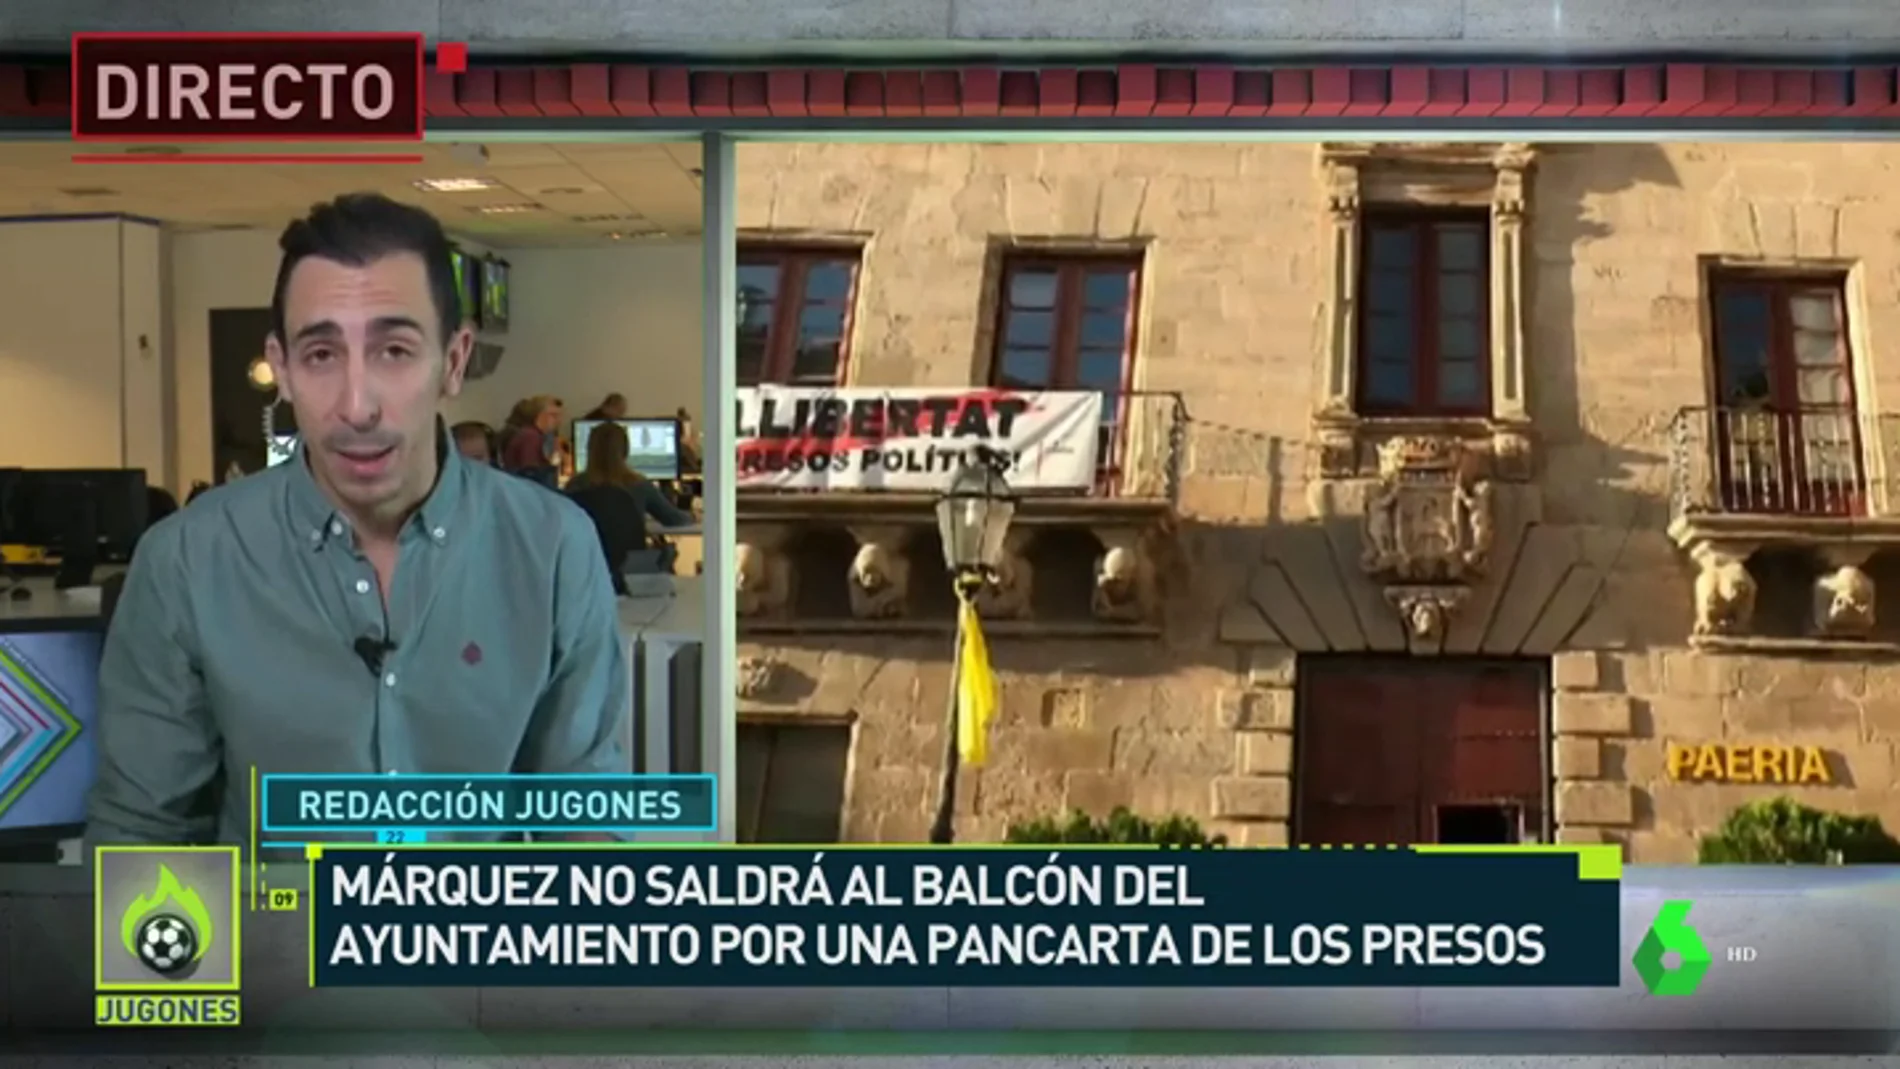 Márquez no celebrará su título en el ayuntamiento por una pancarte independentista